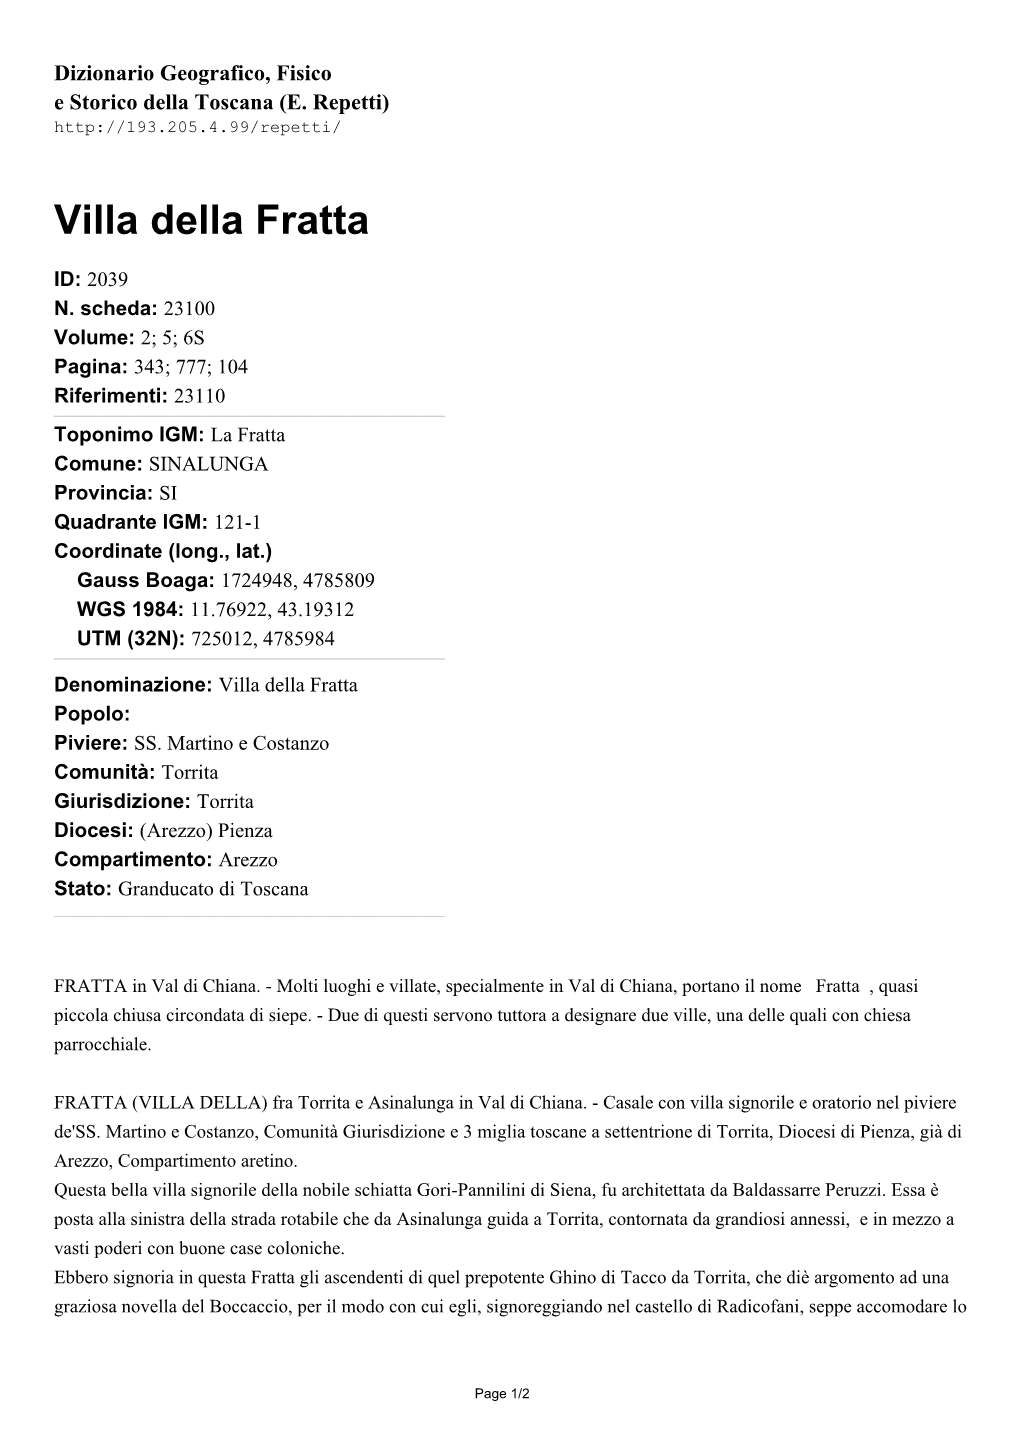 Villa Della Fratta